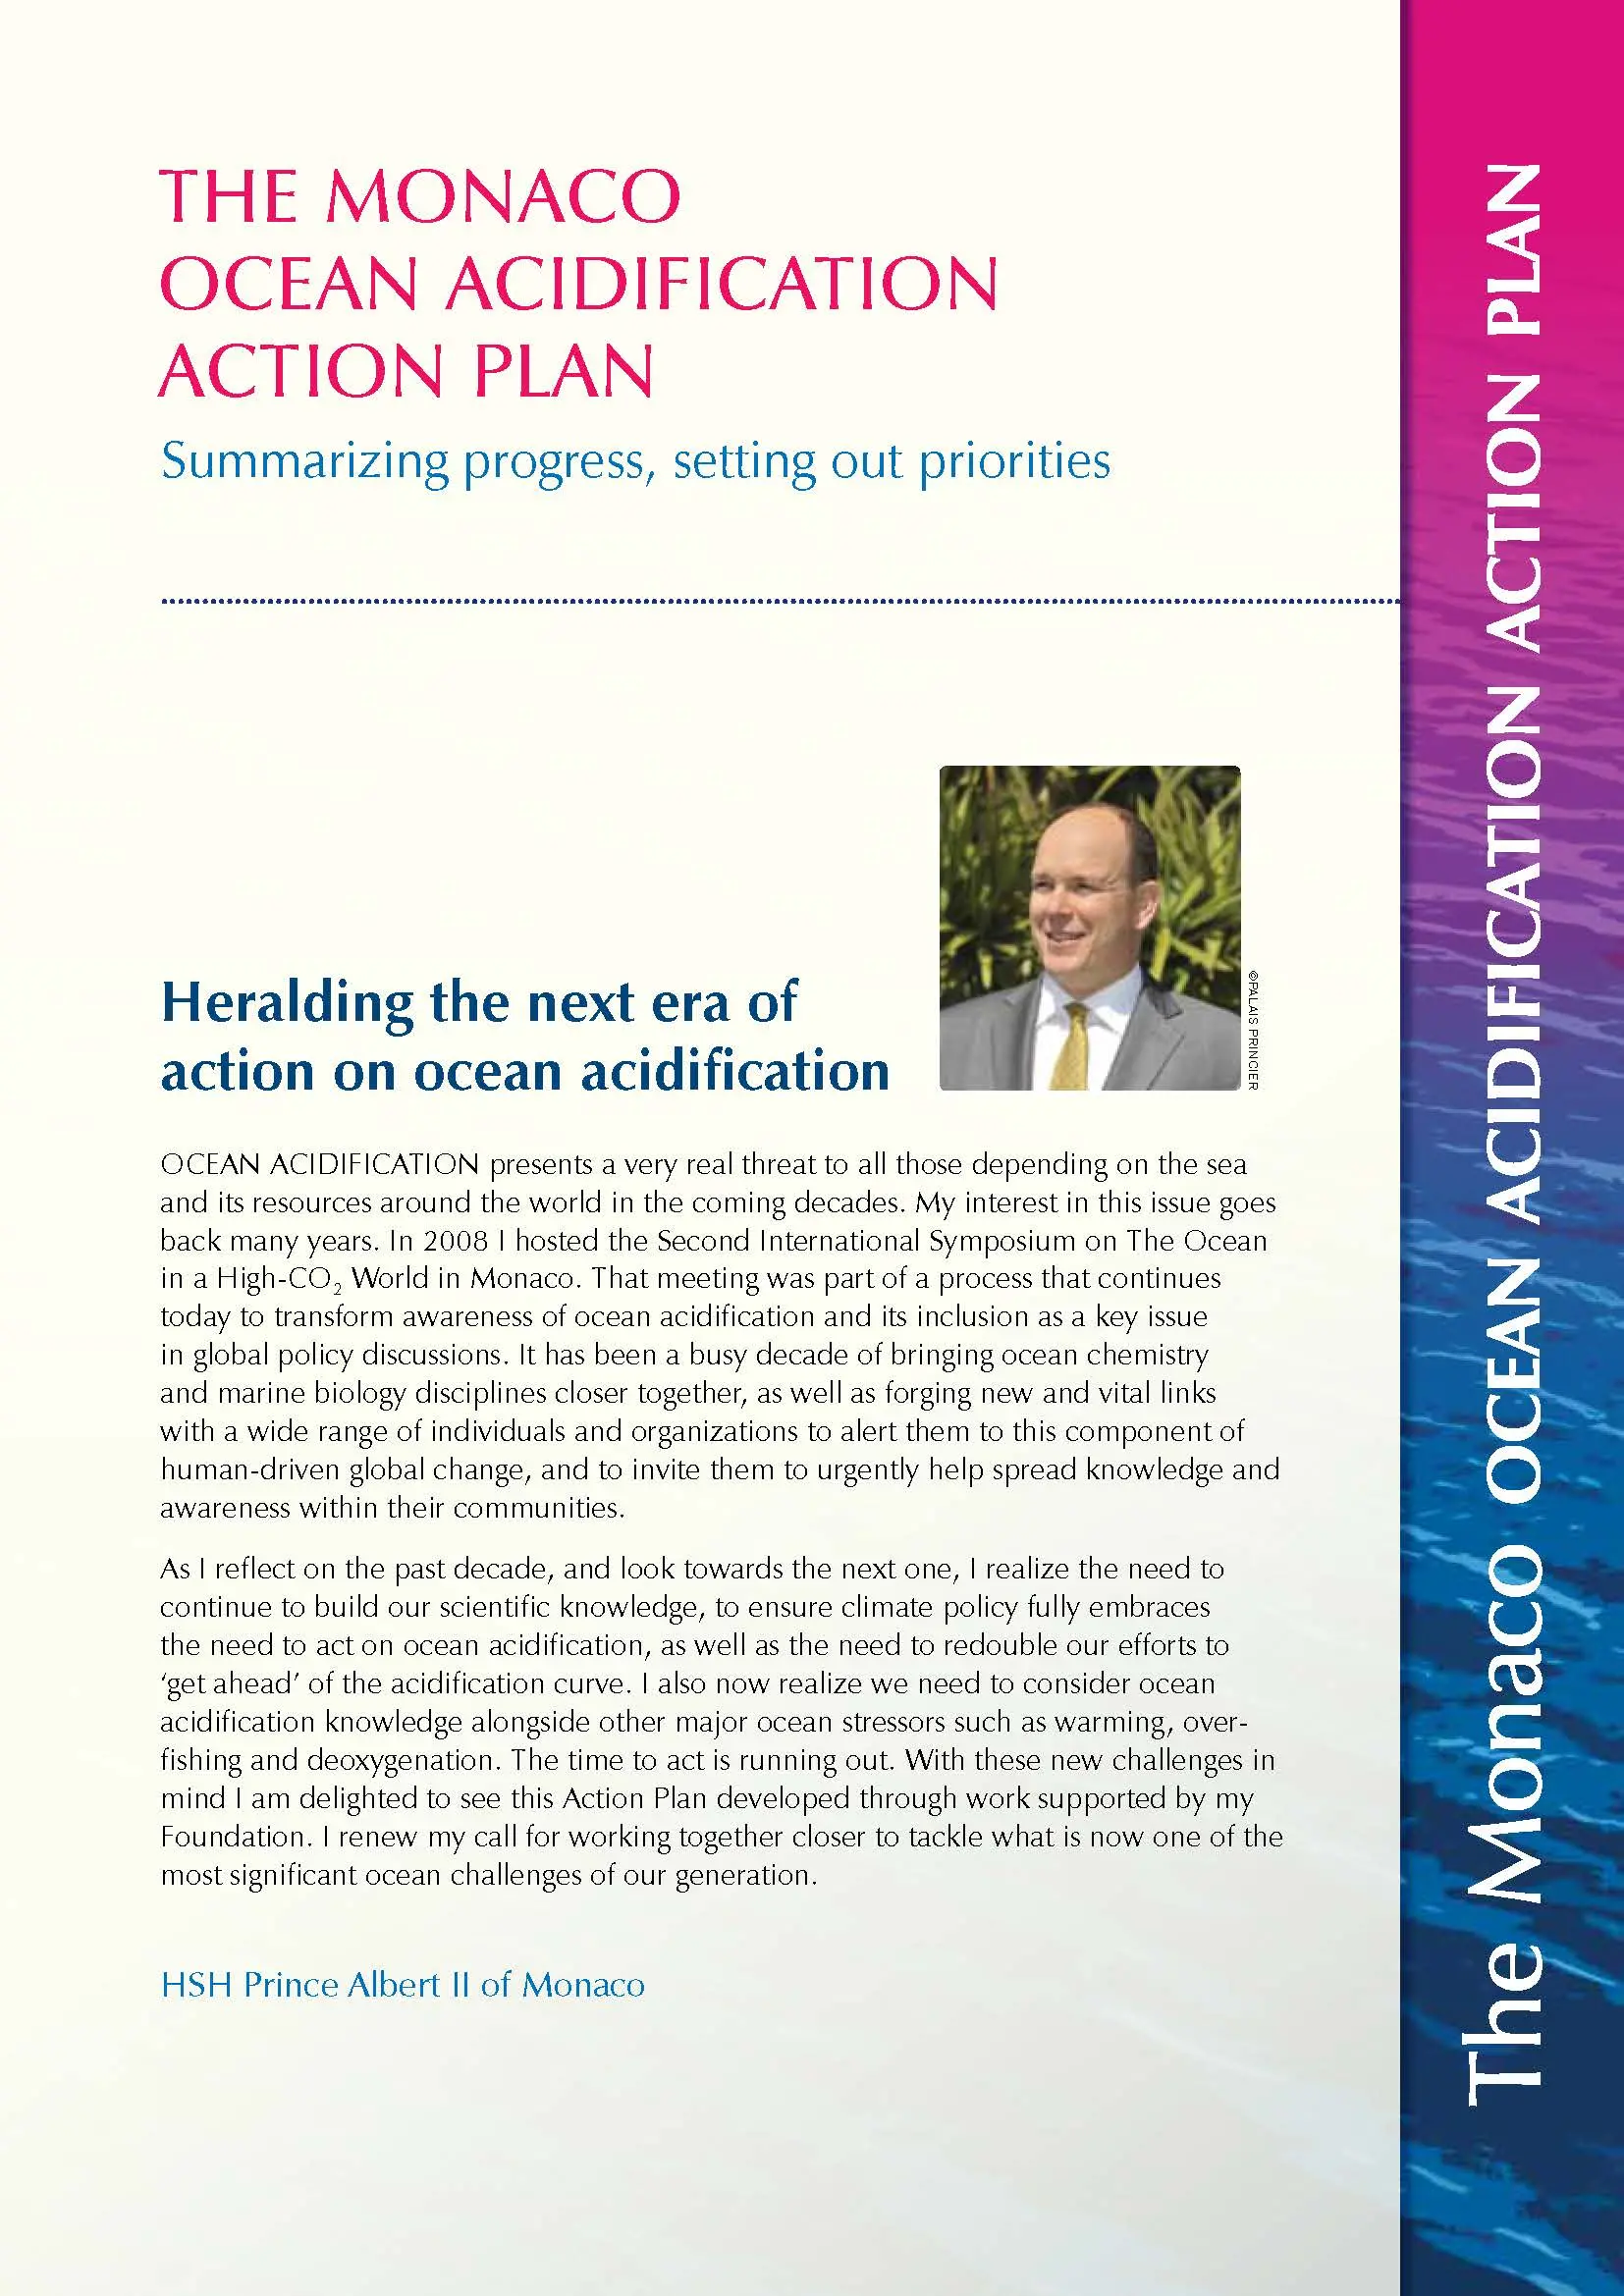 The Monaco Ocean Acidification Action Plan